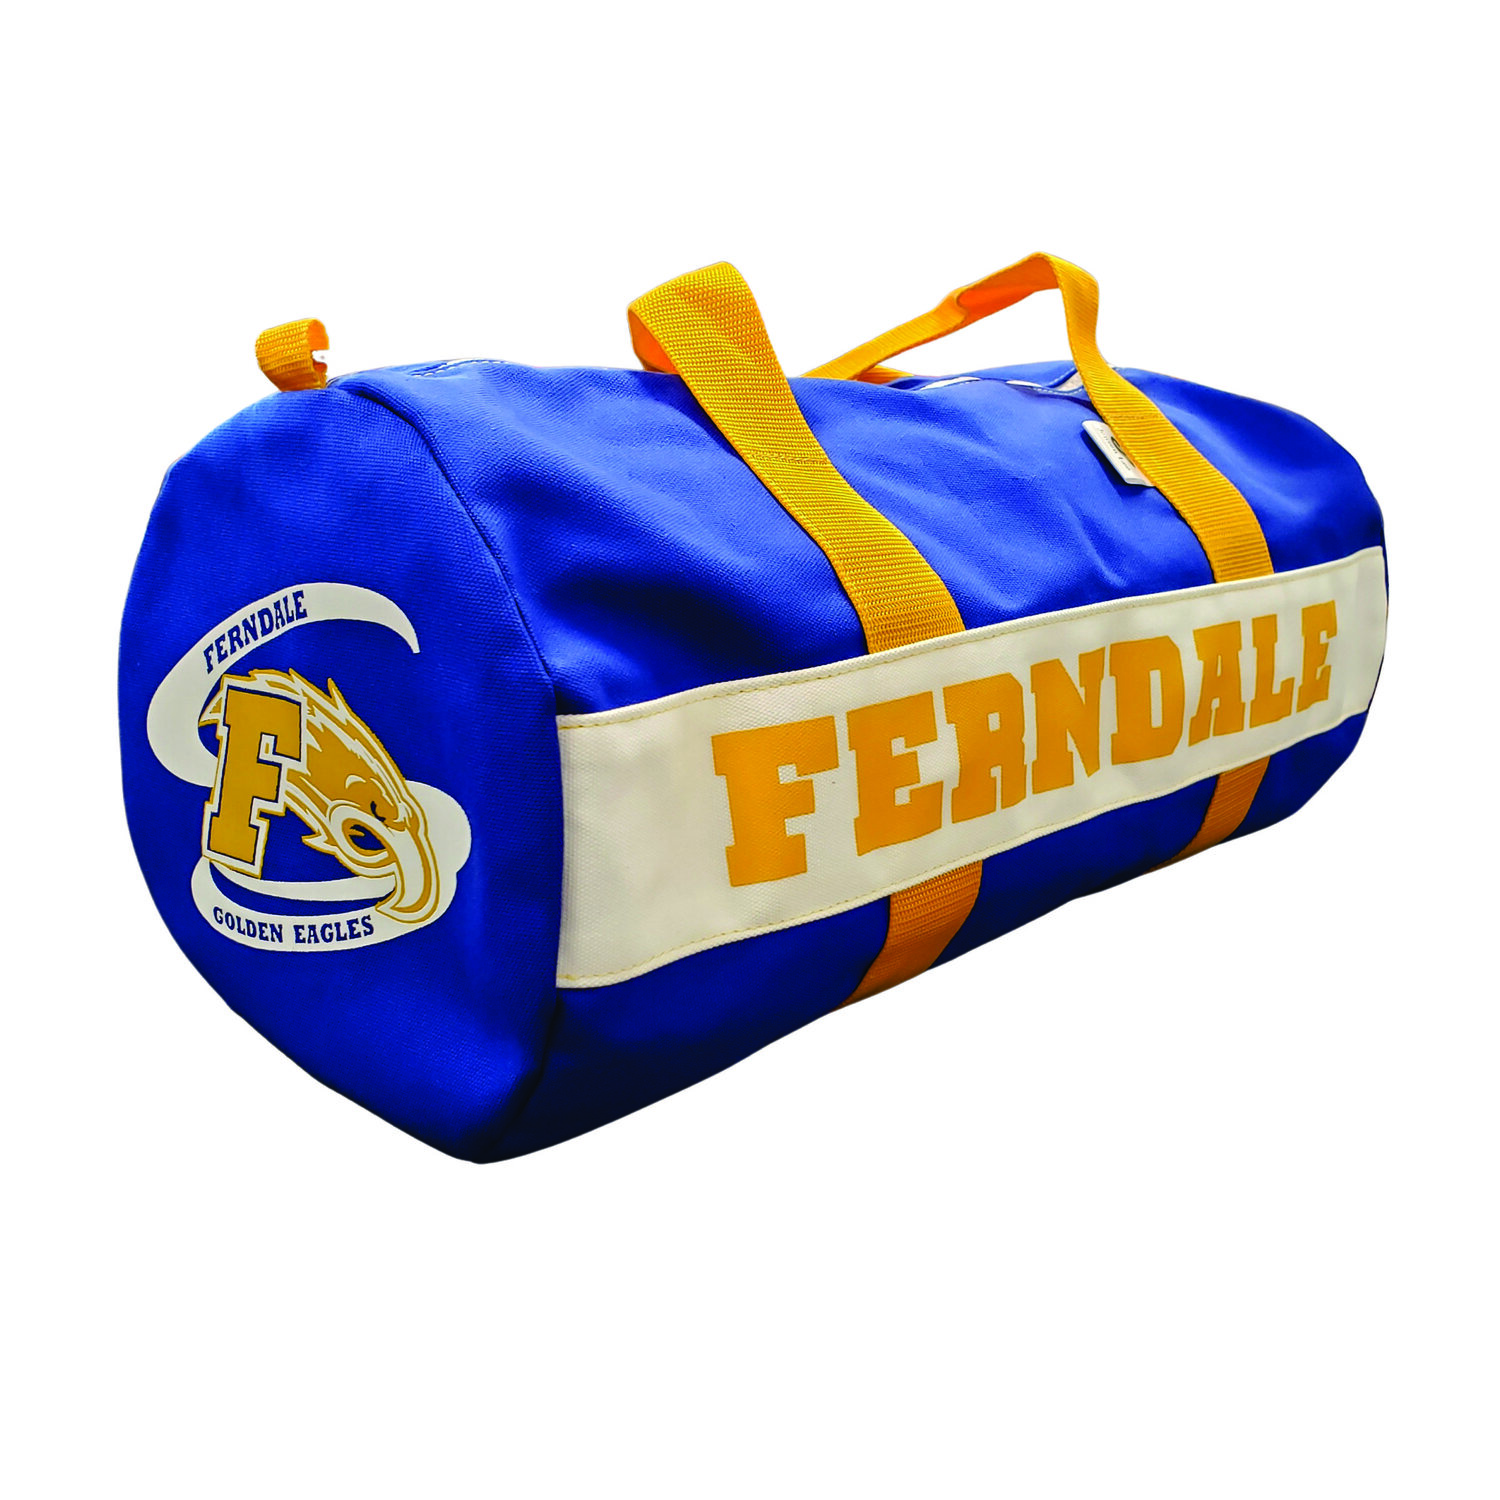 Jensen Lee School Bag, Ferndale Golden Eagles (Gold Handle) — Hats Off